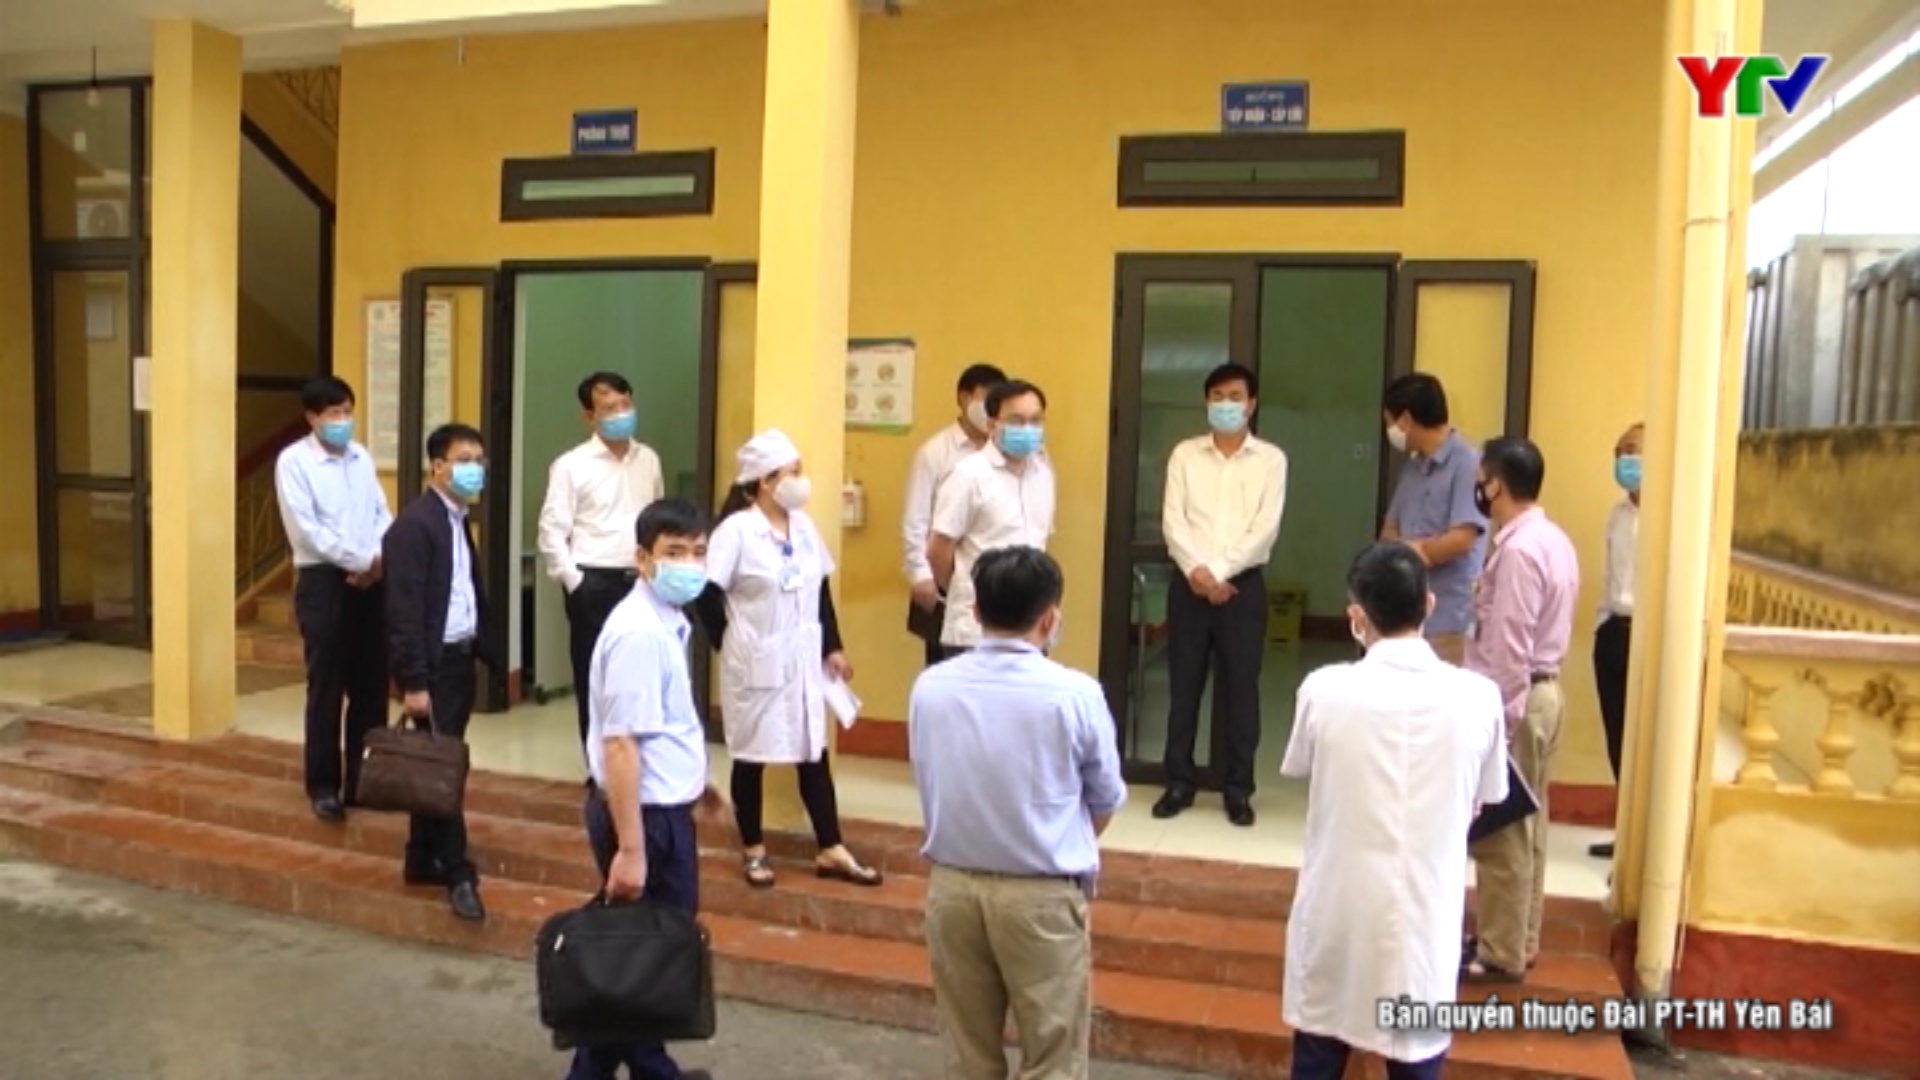 Đồng chí Phó Chủ tịch UBND tỉnh Nguyễn Chiến Thắng kiểm tra công tác phòng, chống dịch bệnh COVID-19 tại thành phố Yên Bái